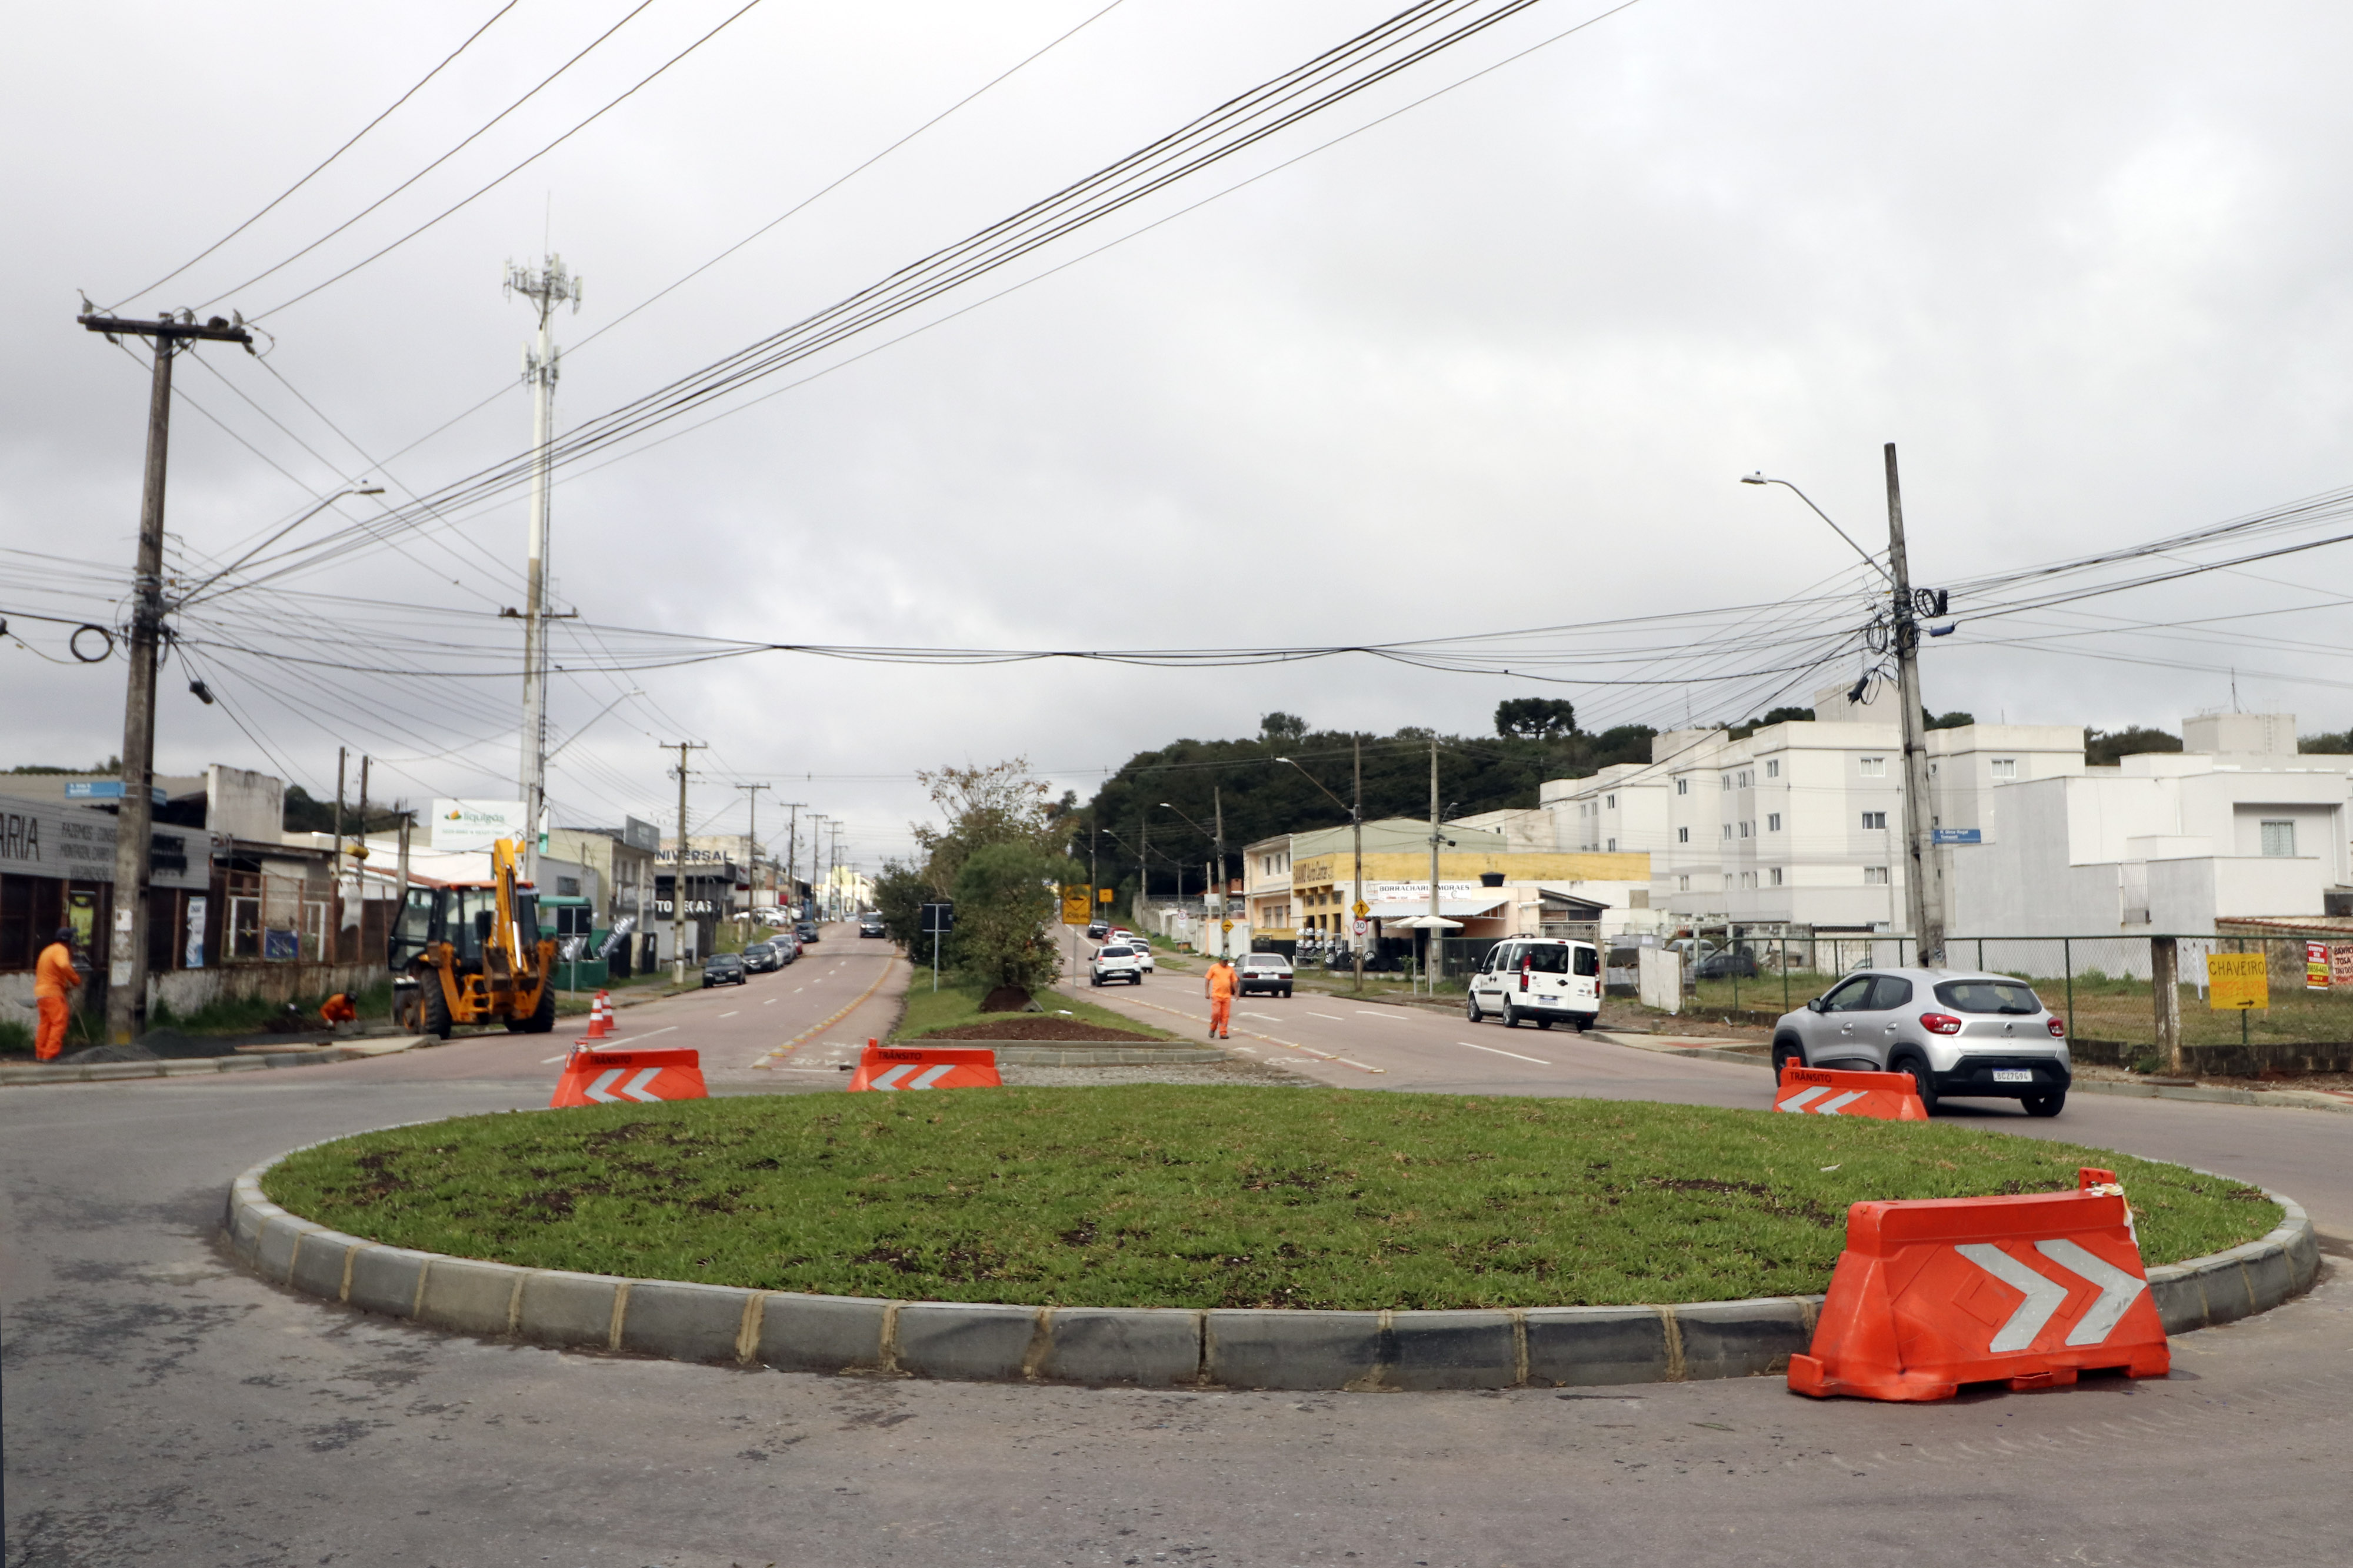 Solicitada Por Moradores Nova Rotatória Melhora O Trânsito No Rio Bonito Prefeitura De Curitiba 